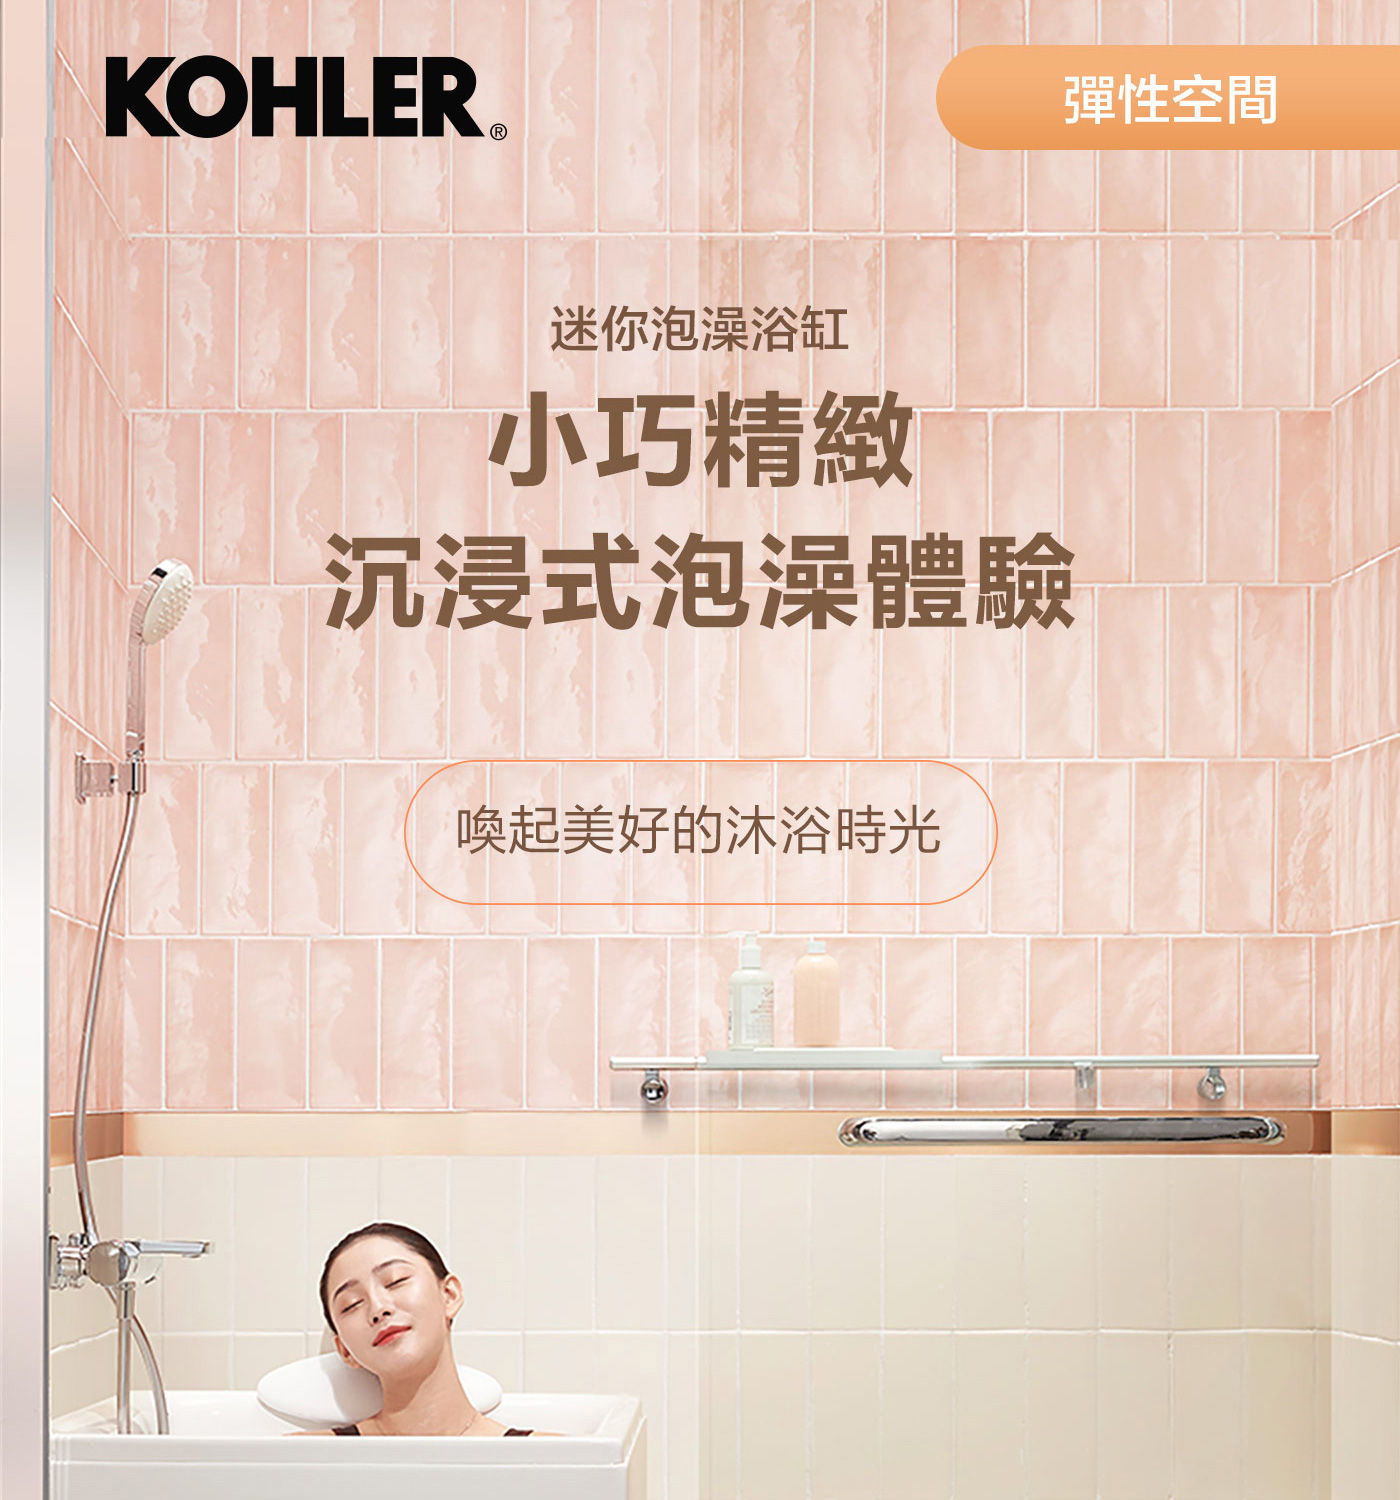 KOHLER 1.2公尺座臥式浴缸左角位 帶腳蹬+外排水小巧精緻陳進式泡澡體驗，喚起美好的沐浴時光